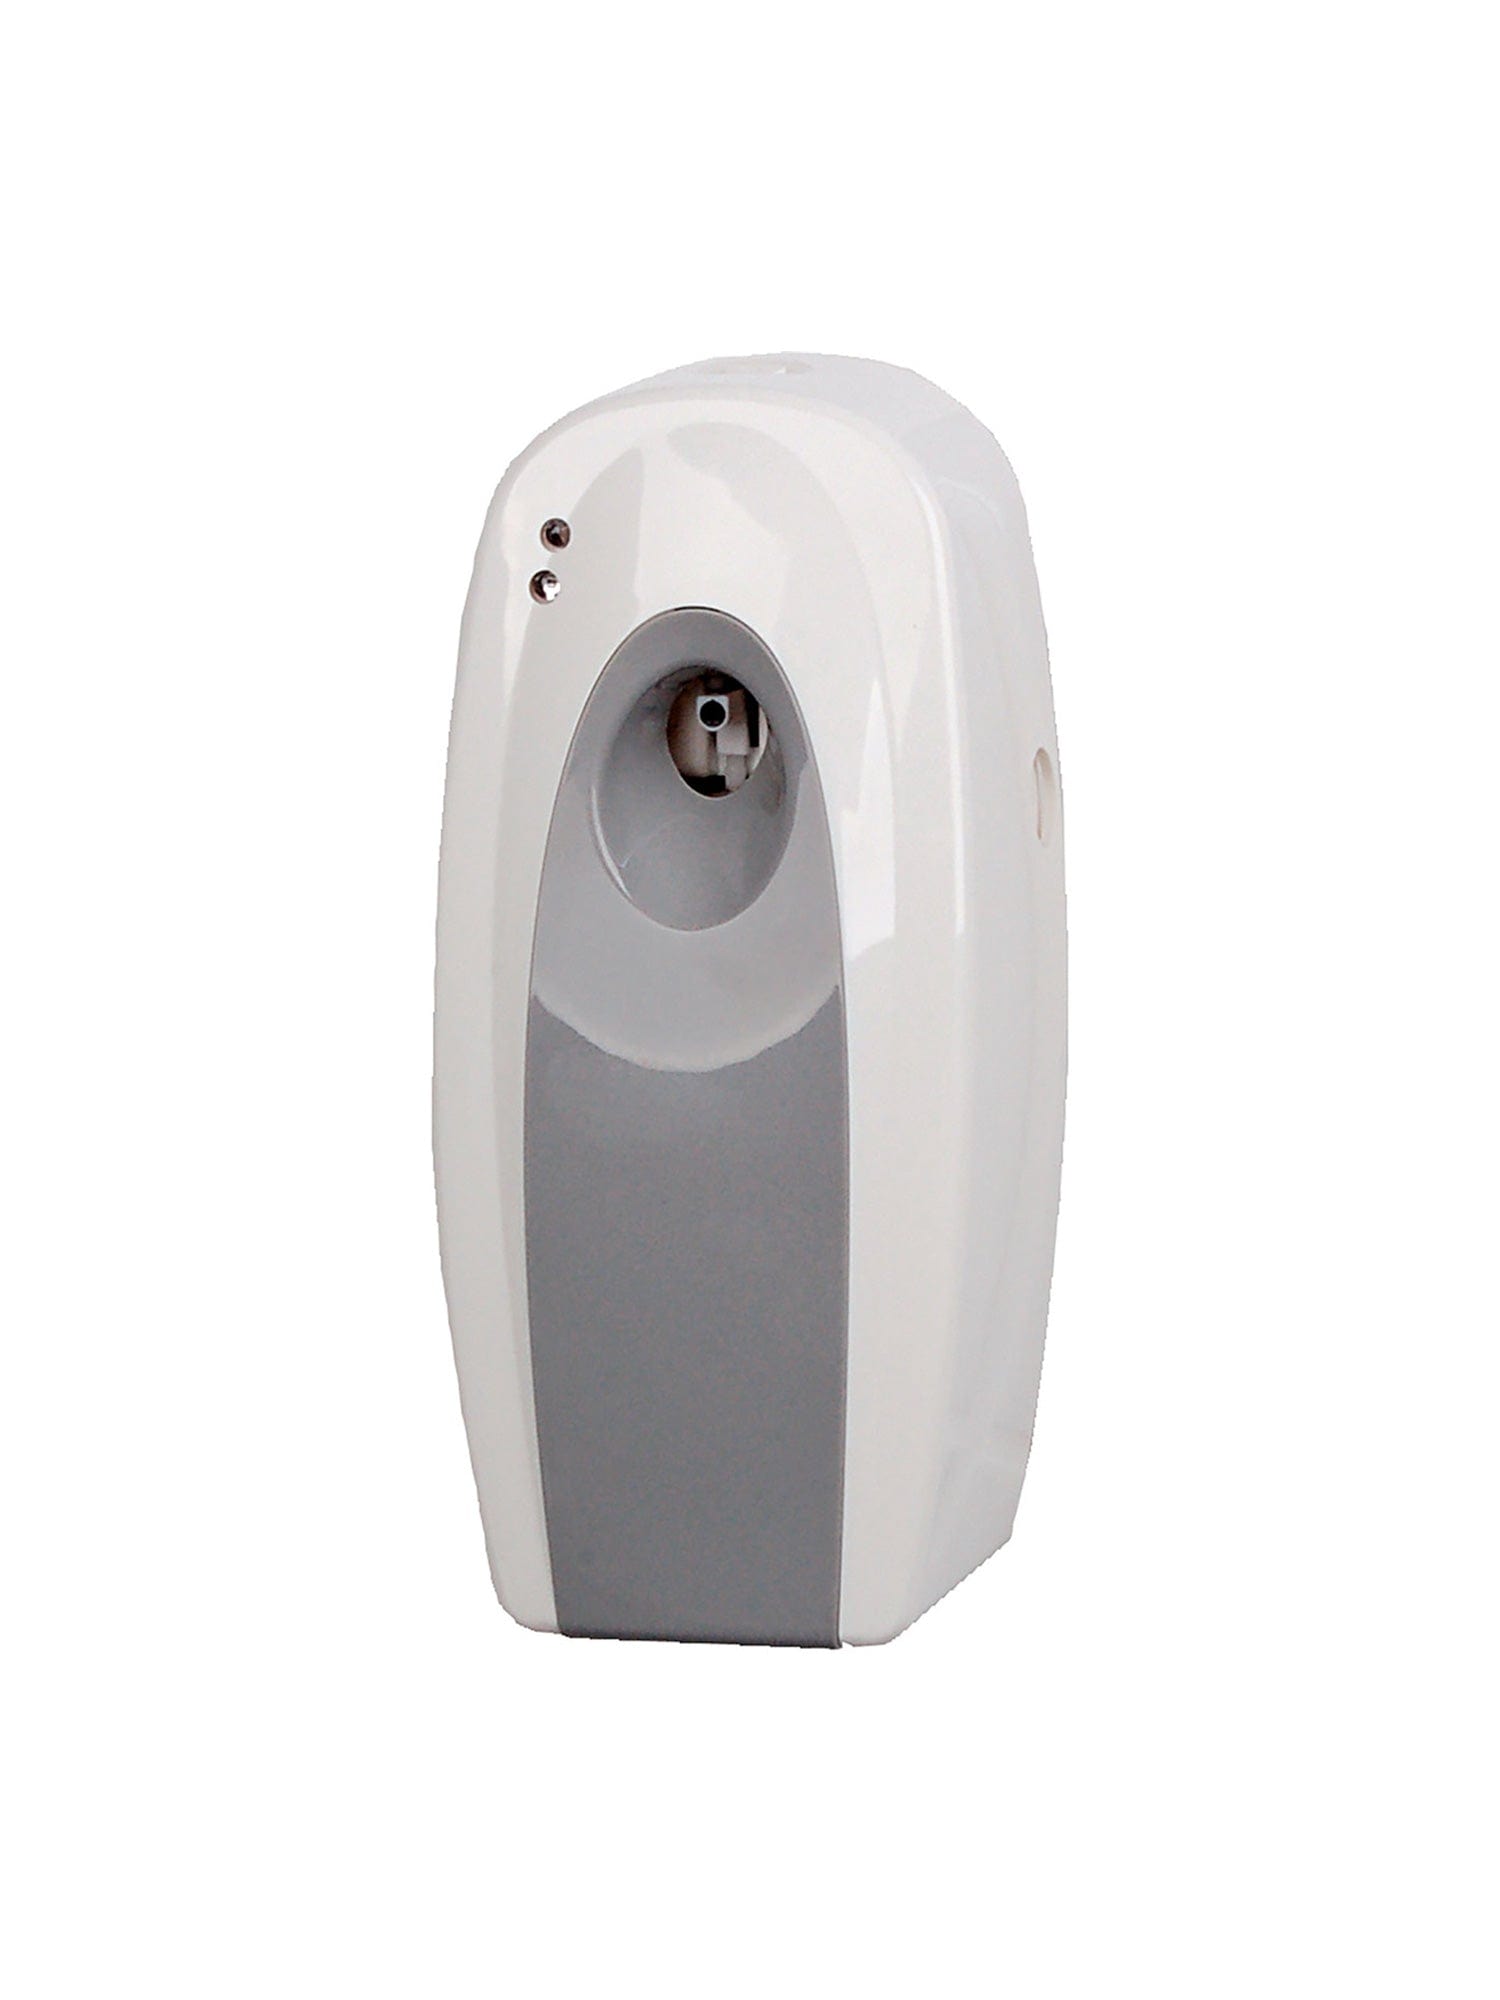 jangro 270ml air freshener dispenser